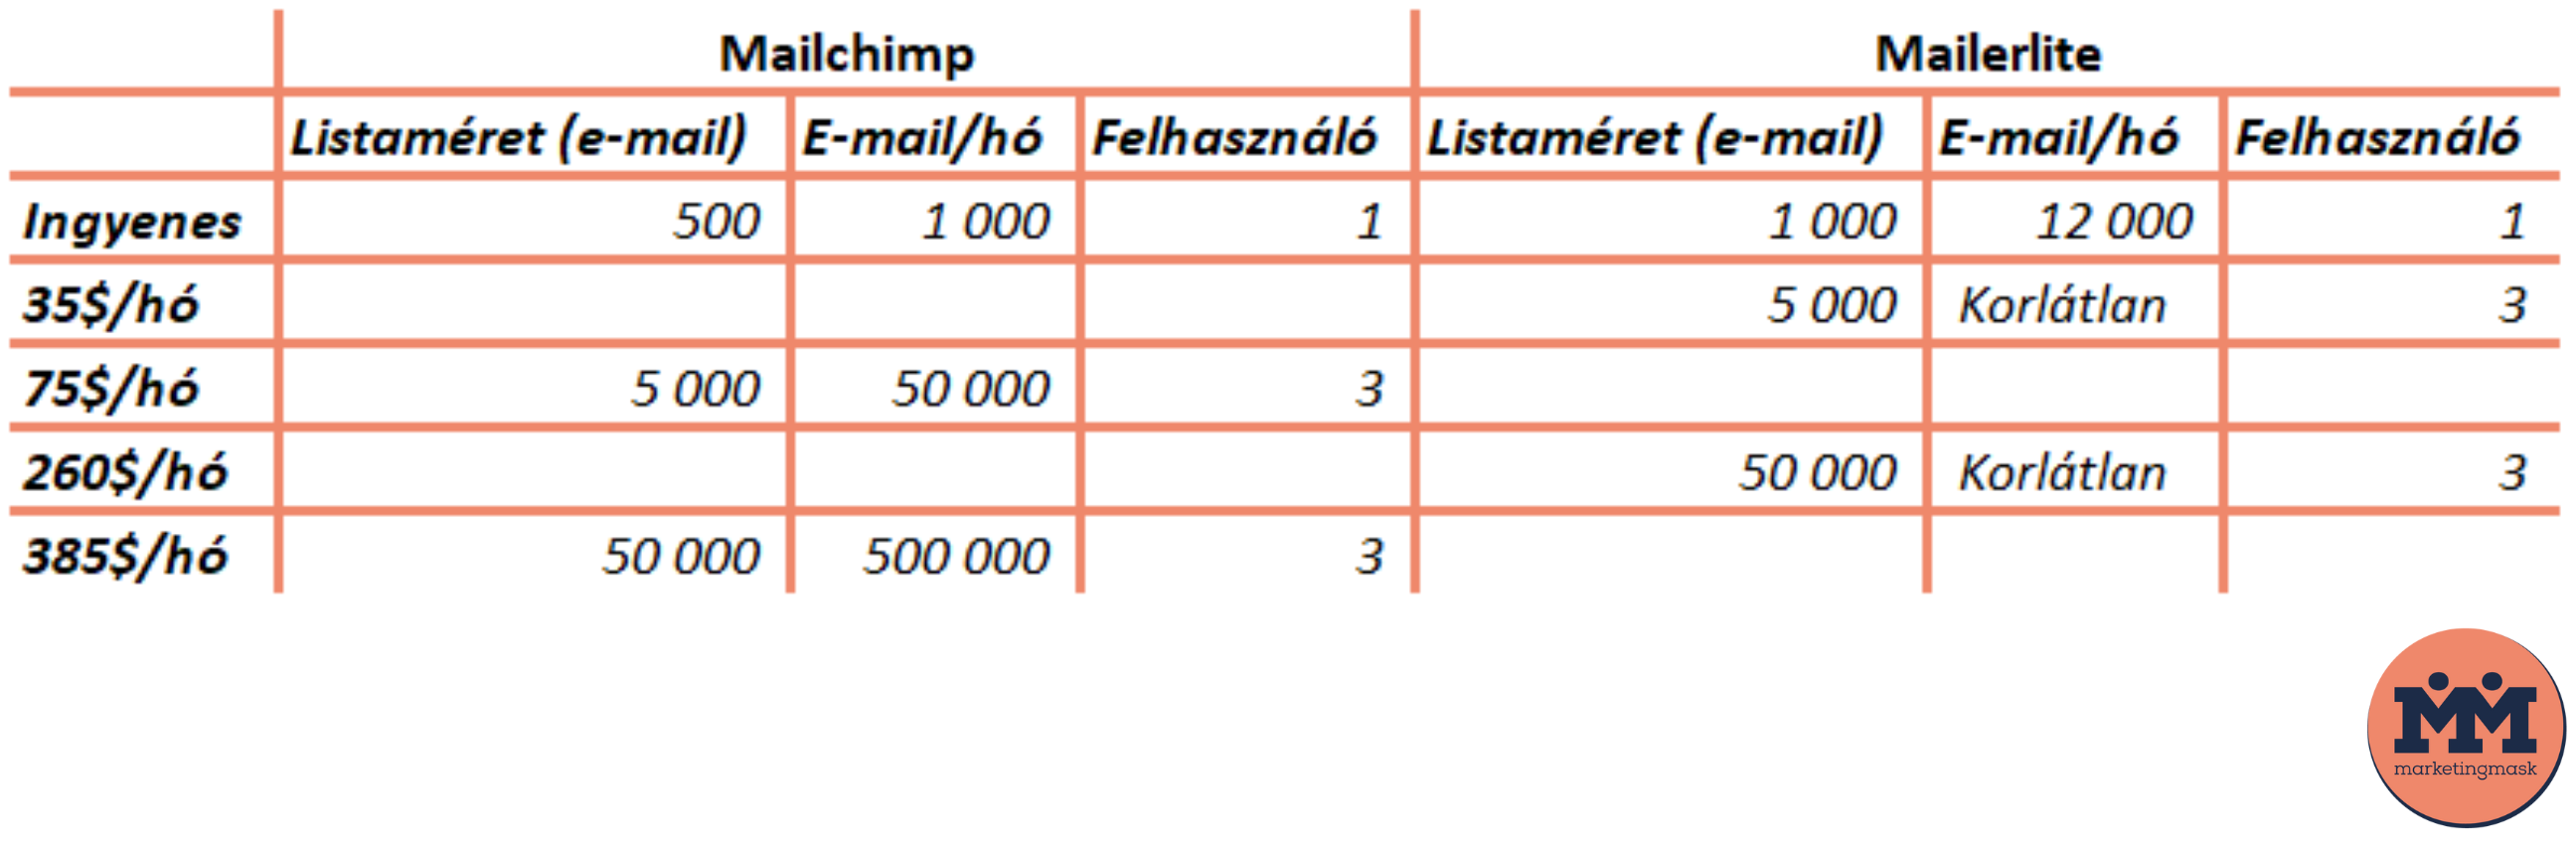 A Mailchimp és a Mailerlite előfizetések összehasonlítása